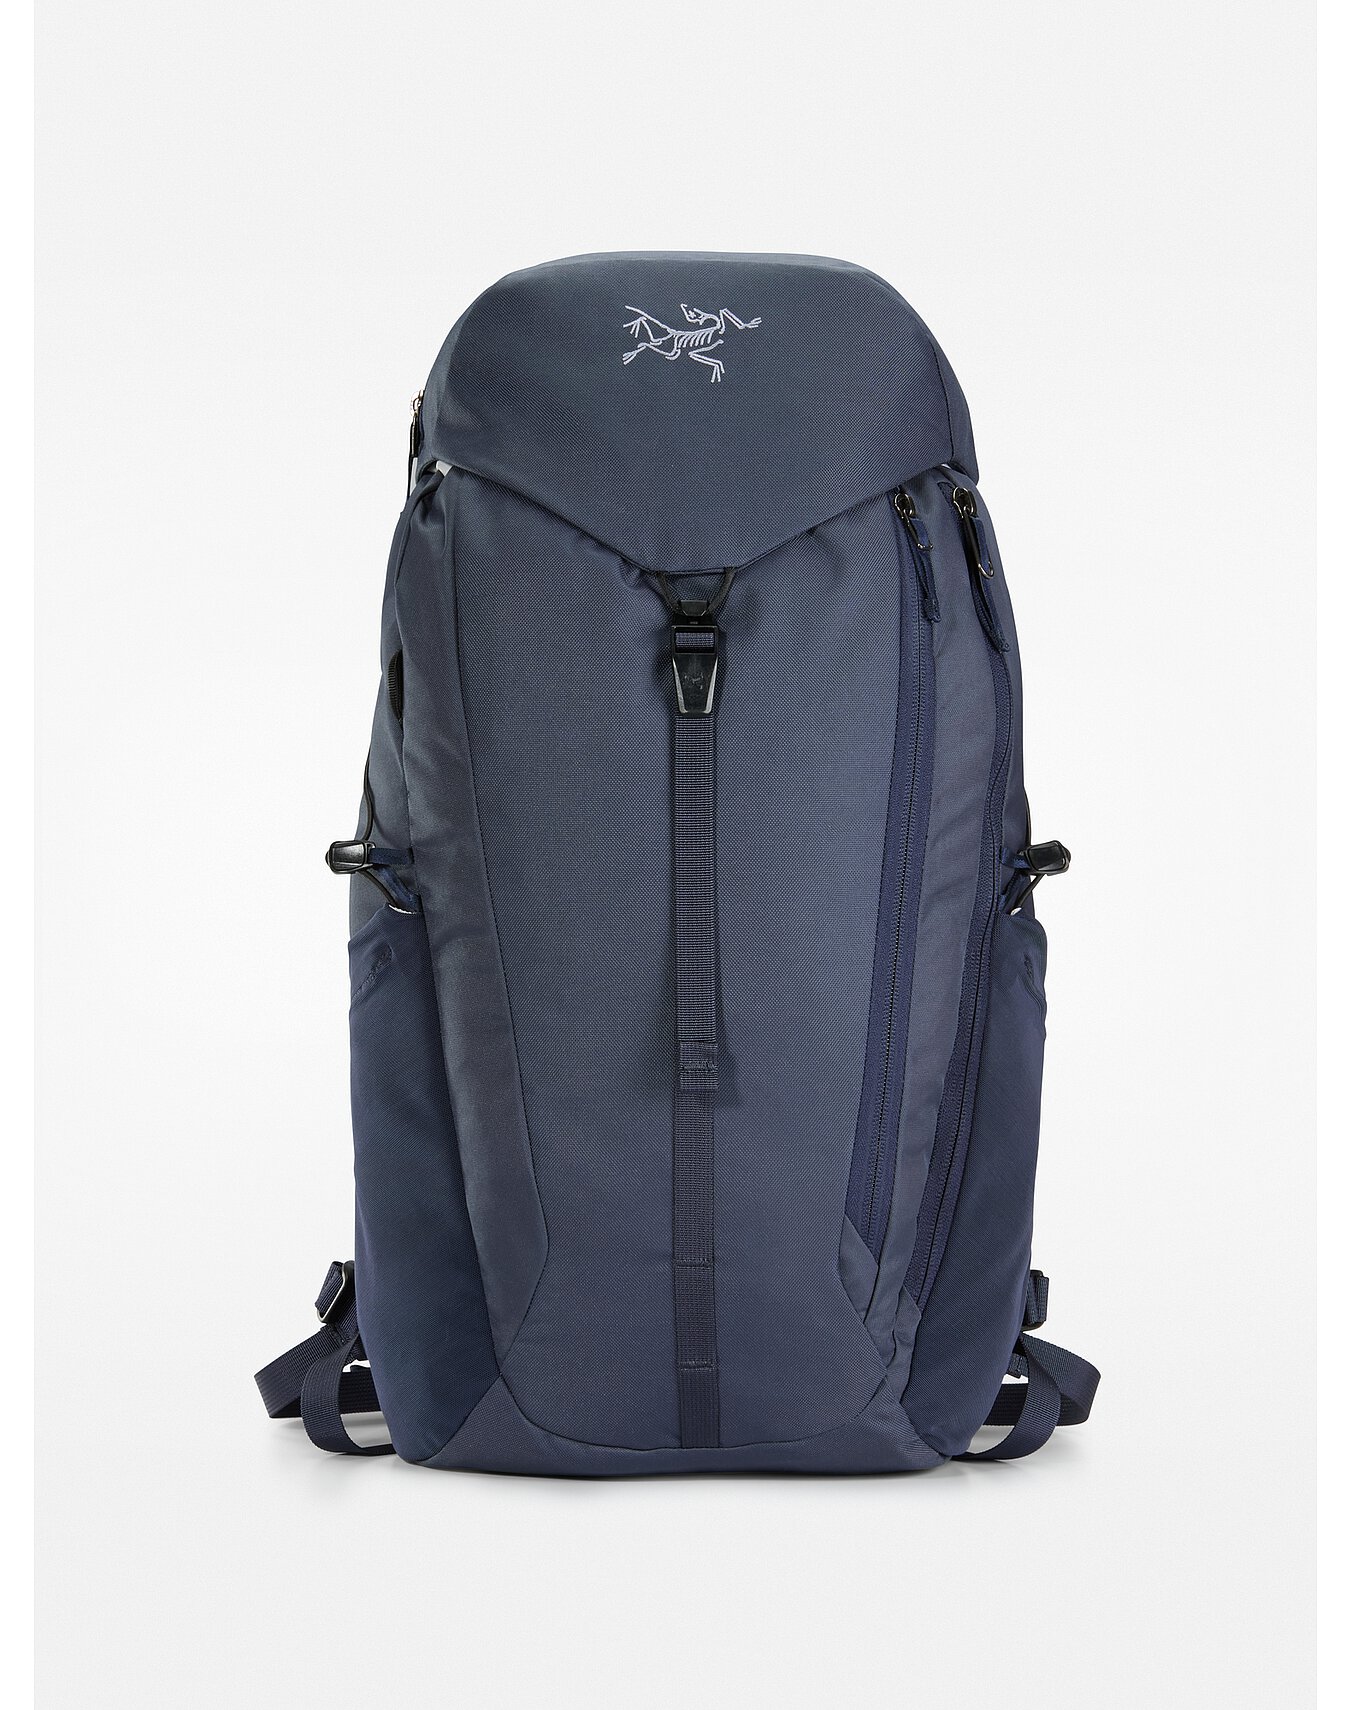 Mantis 20 Backpack | Arc'teryx Outlet